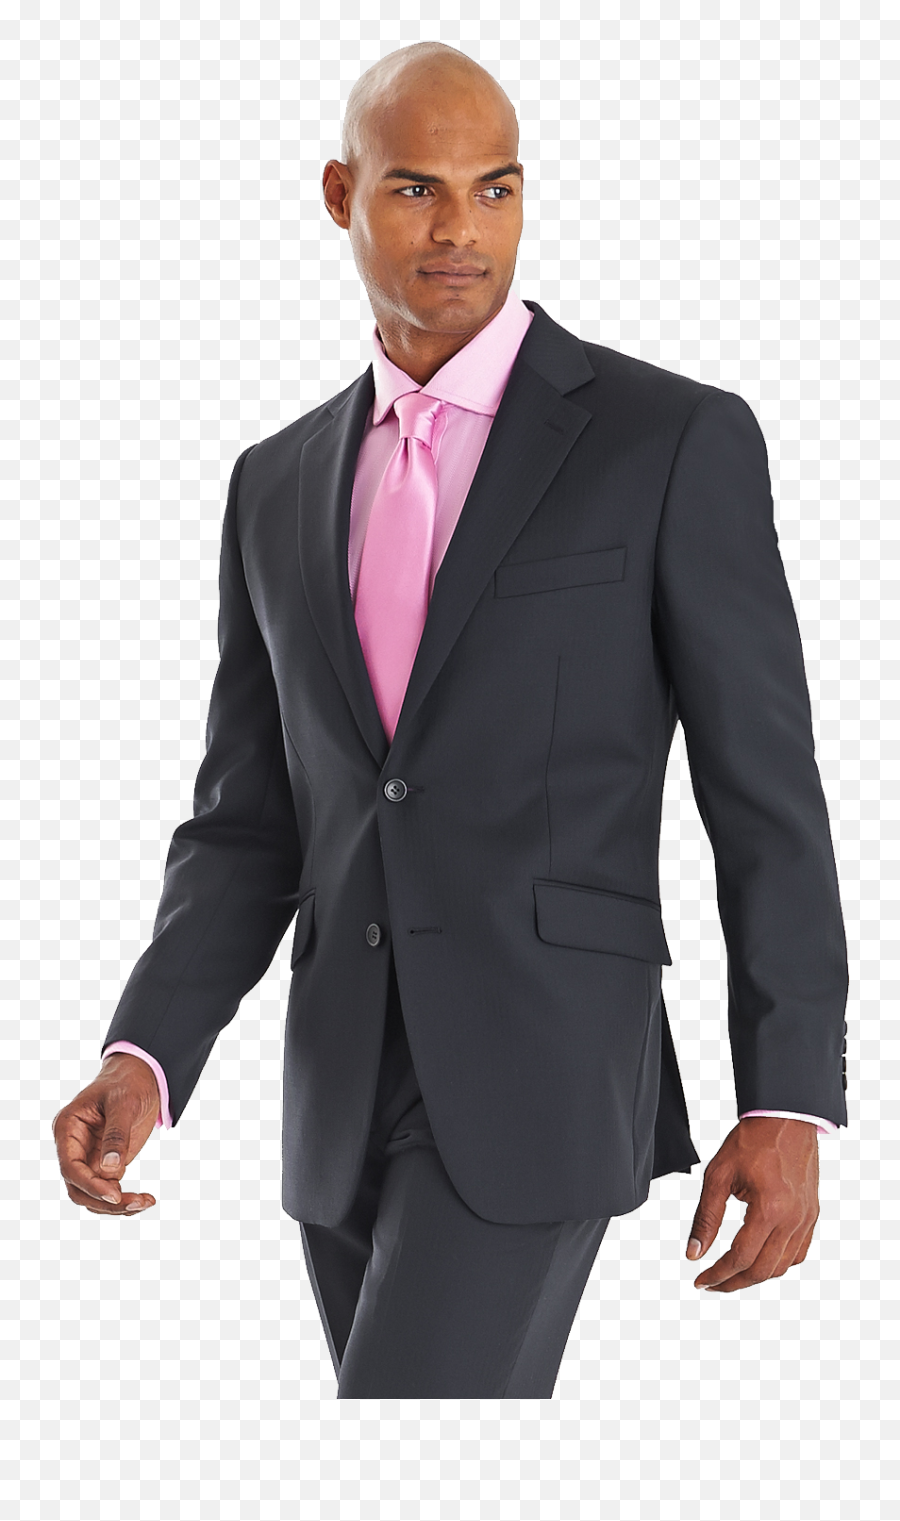 Suit Png Images Free Download - Black Suit Pink Tie,Suit Transparent Background